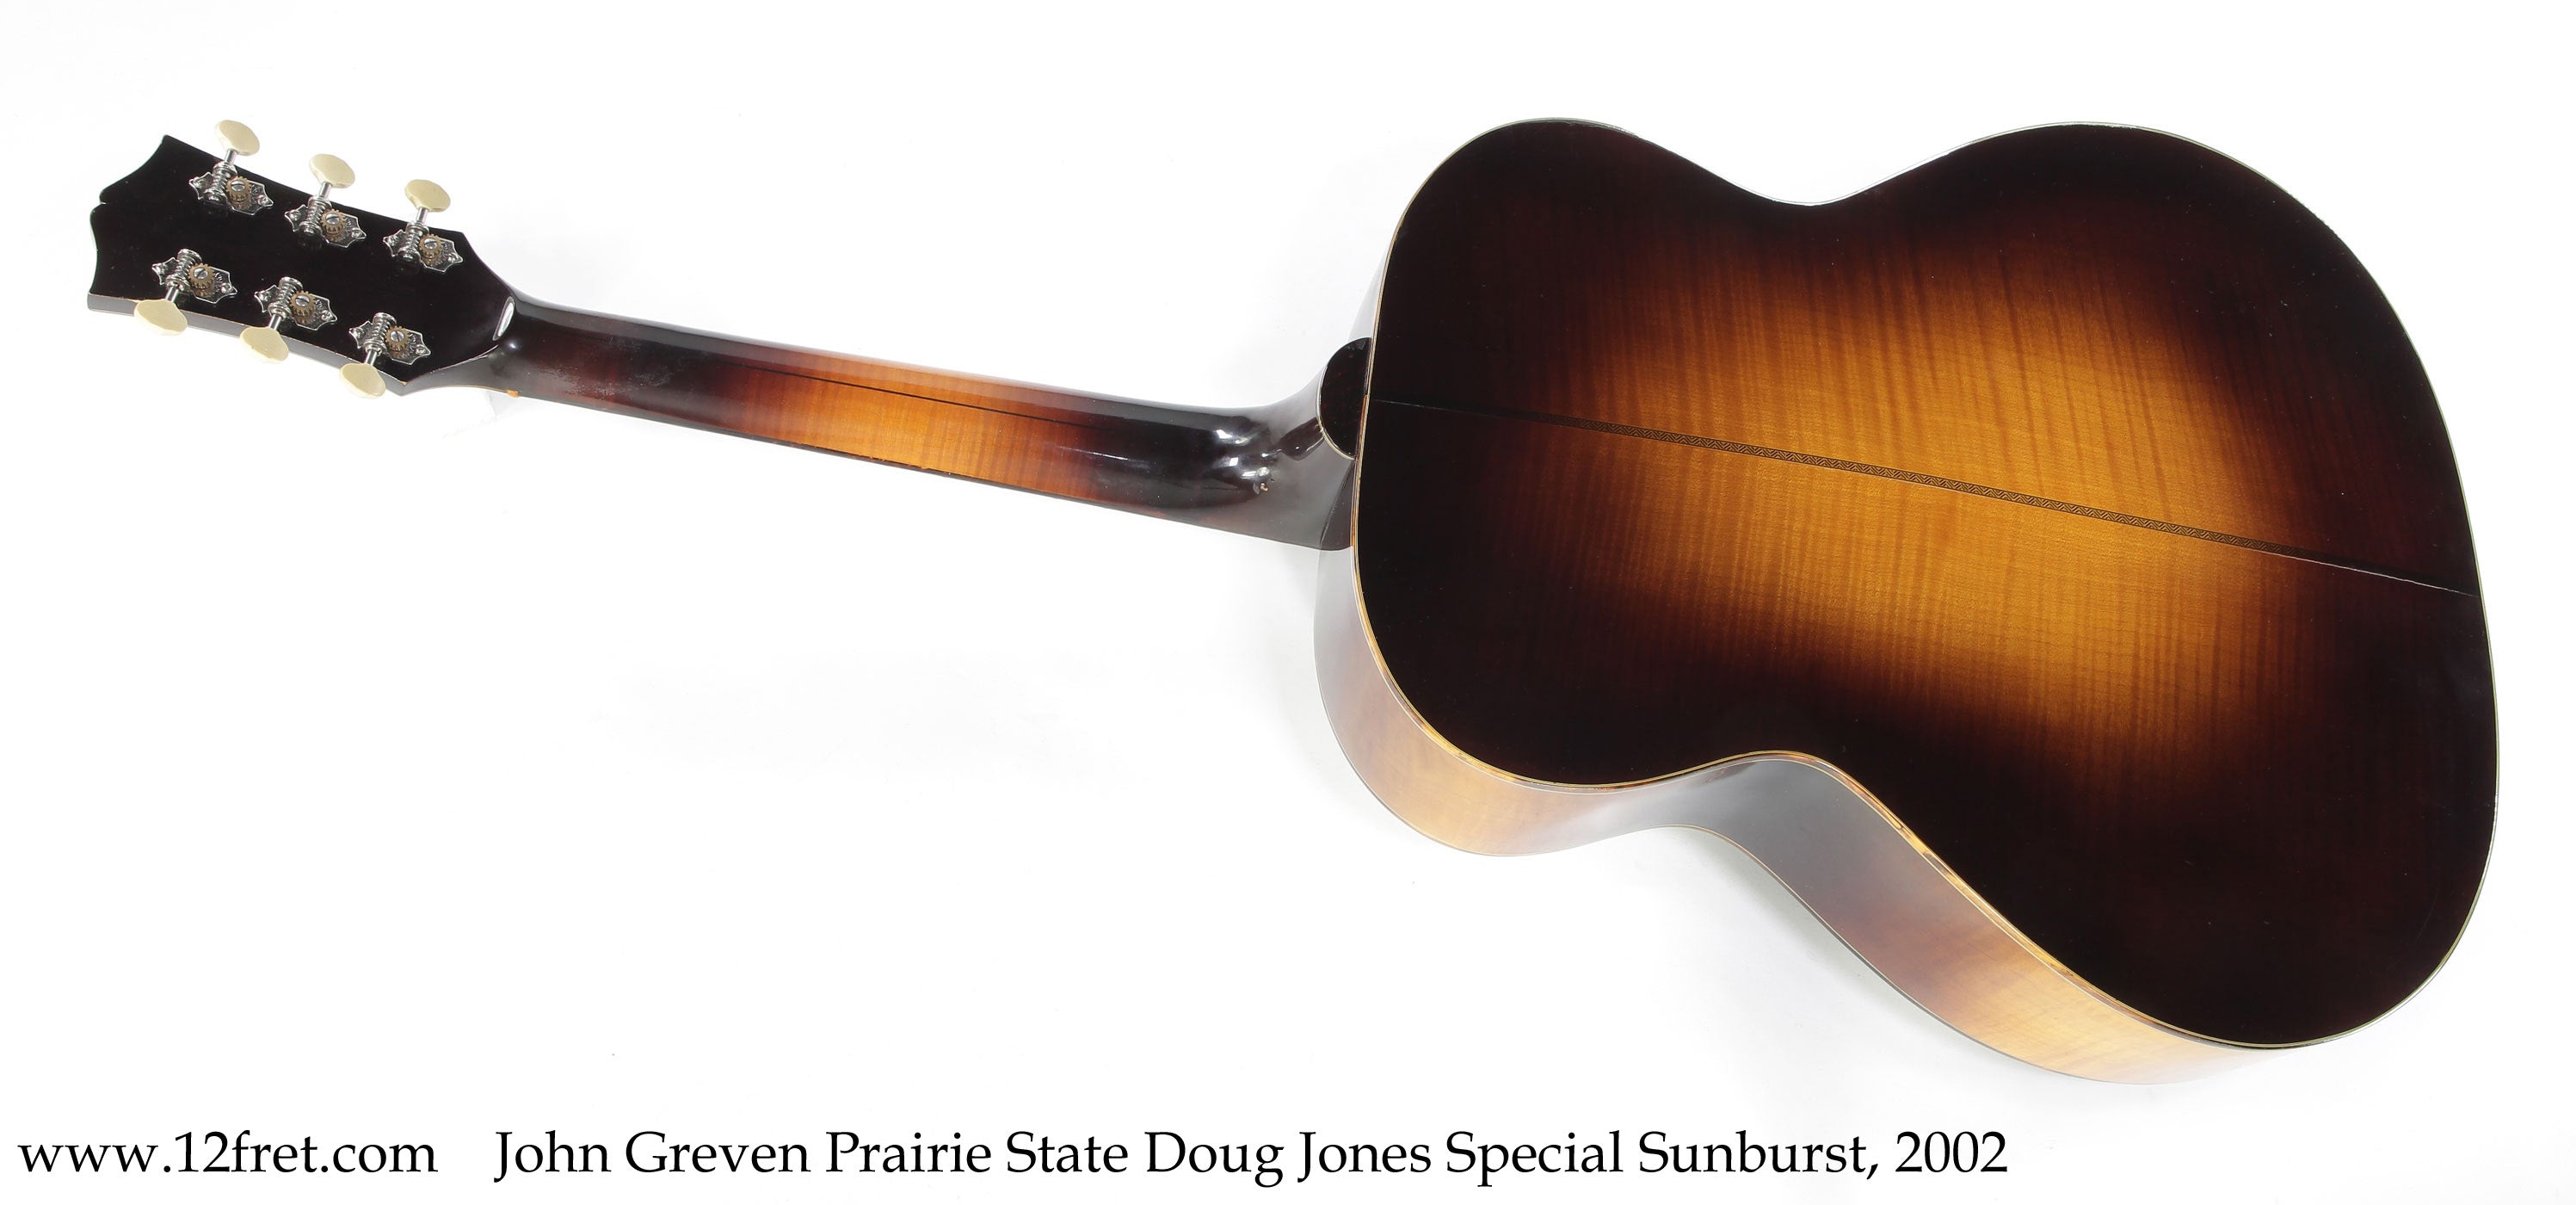 John Greven Prairie State Doug Jones Special Sunburst, 2002 - The Twelfth Fret